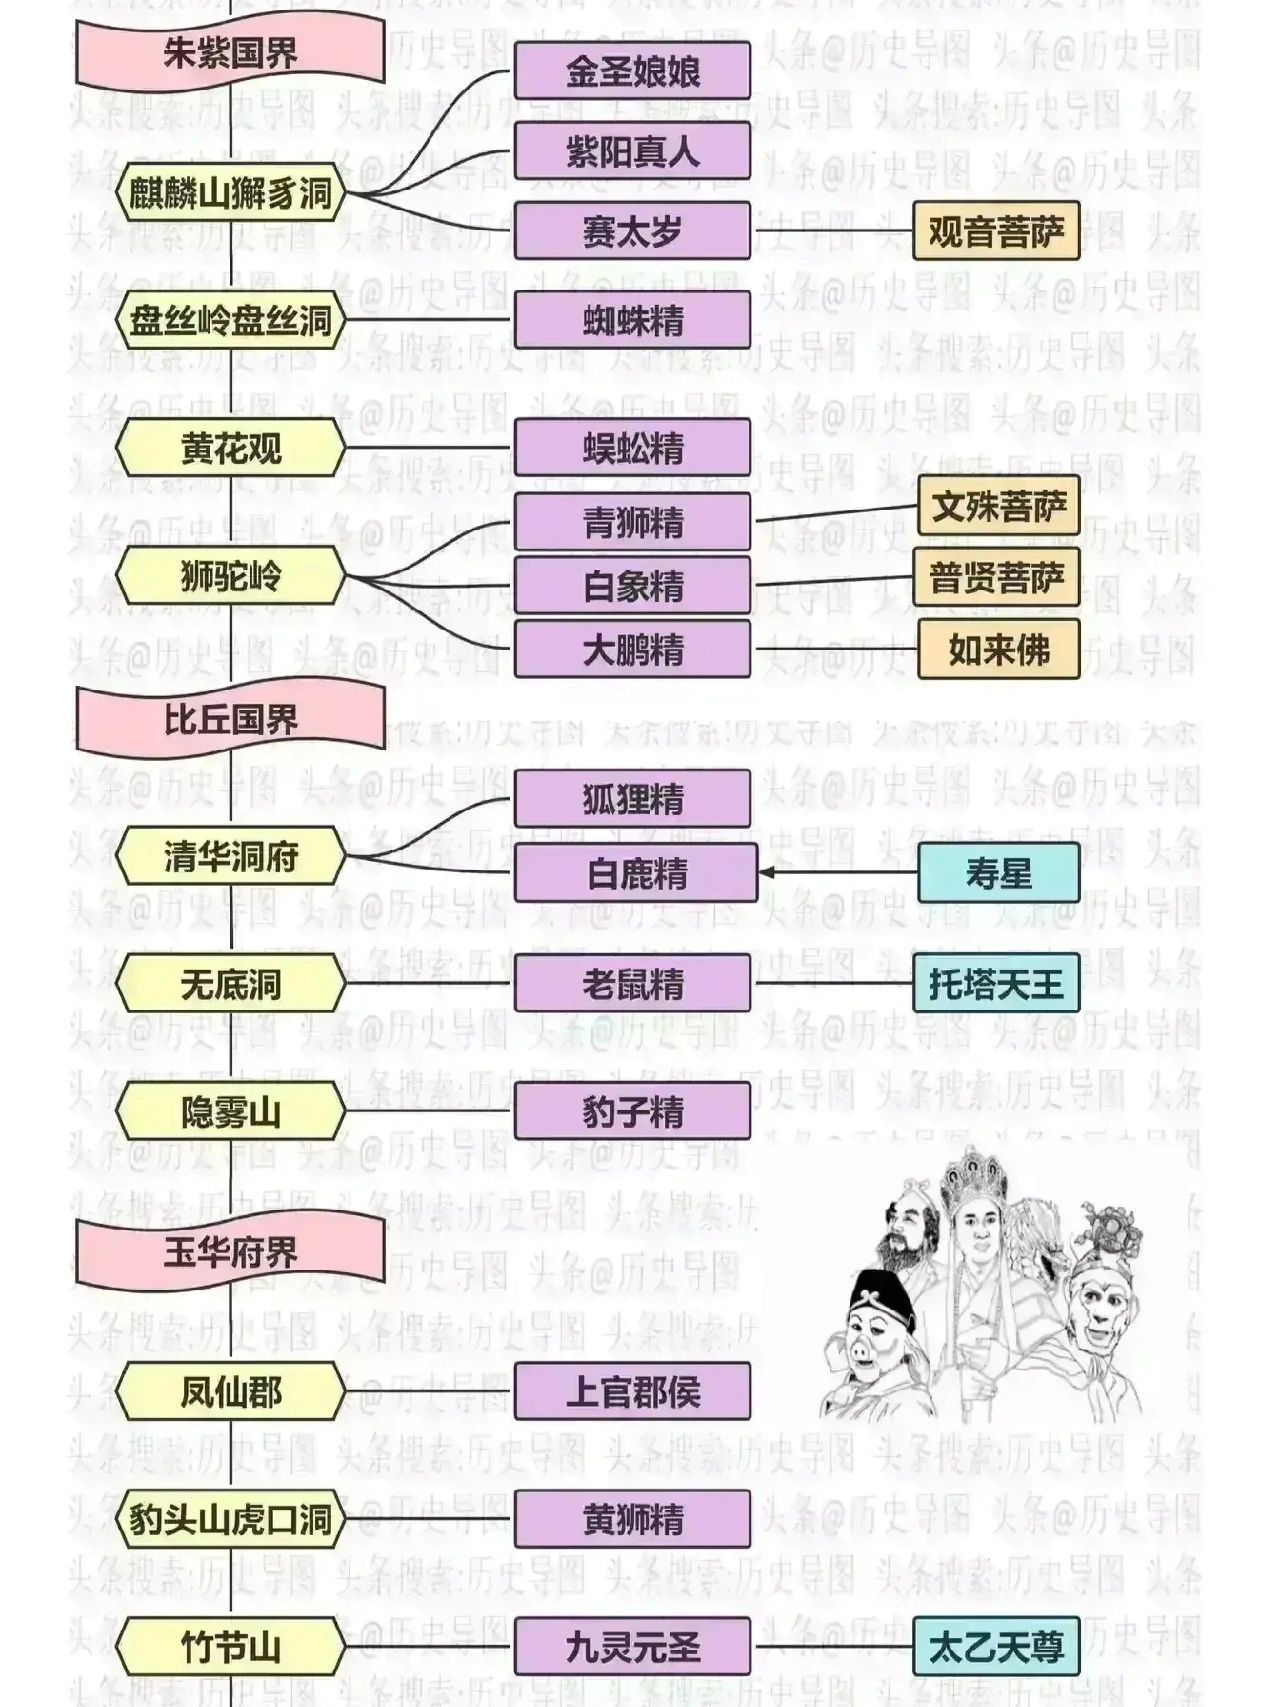 一张图带你理清《西游记》主要人物关系 - 华东素质教育网